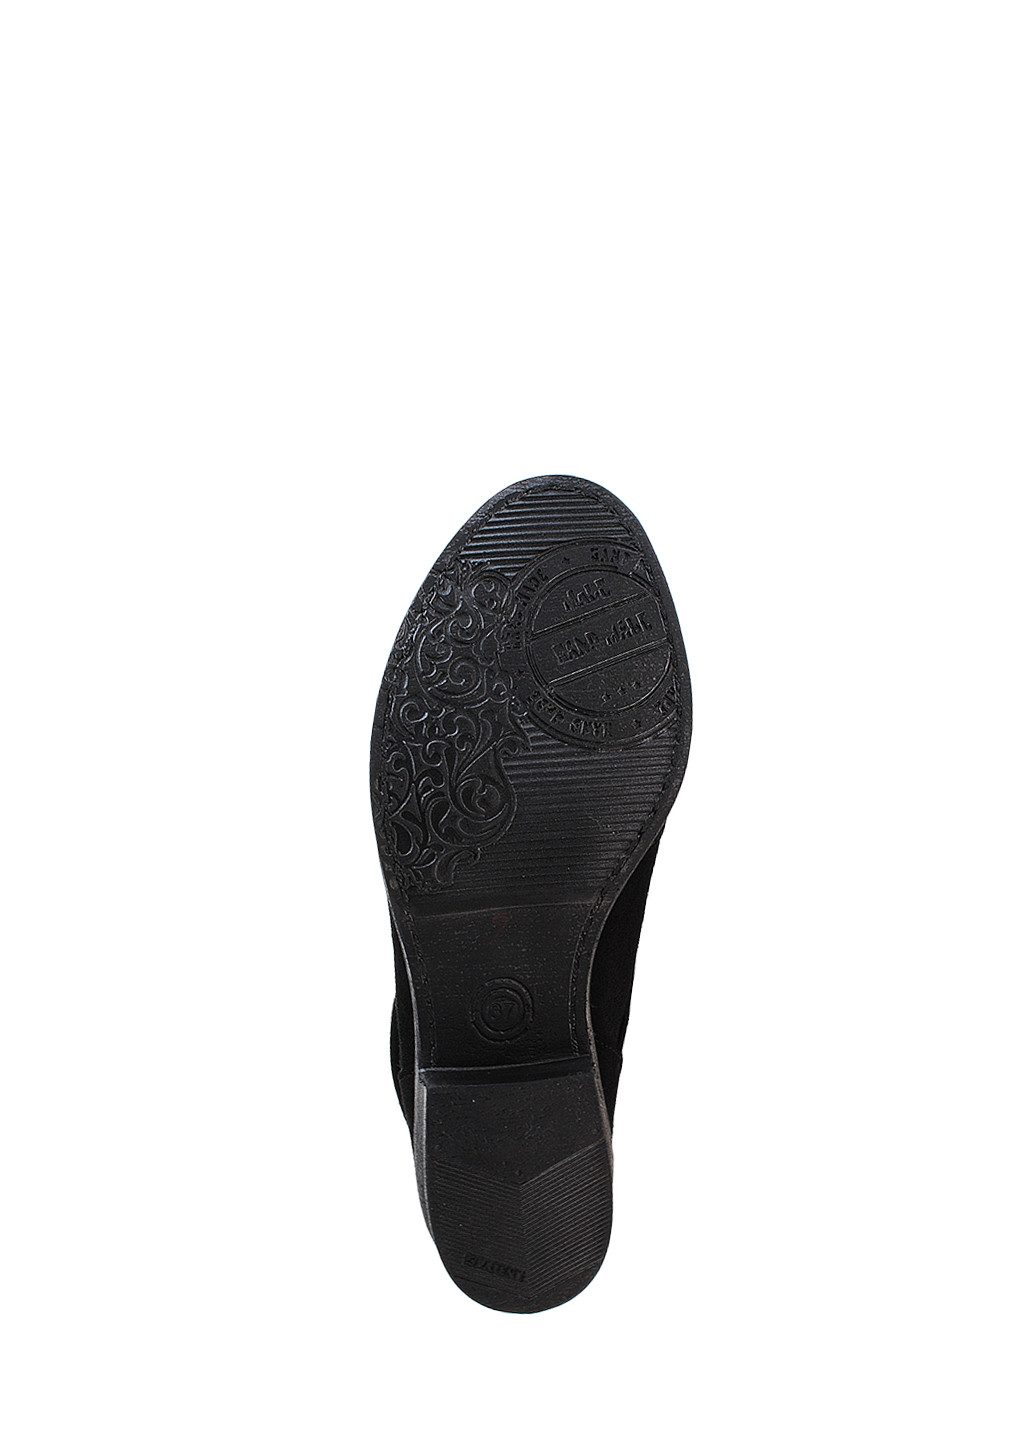 Зимние ботинки r2193p-11 черный Crisma из натуральной замши